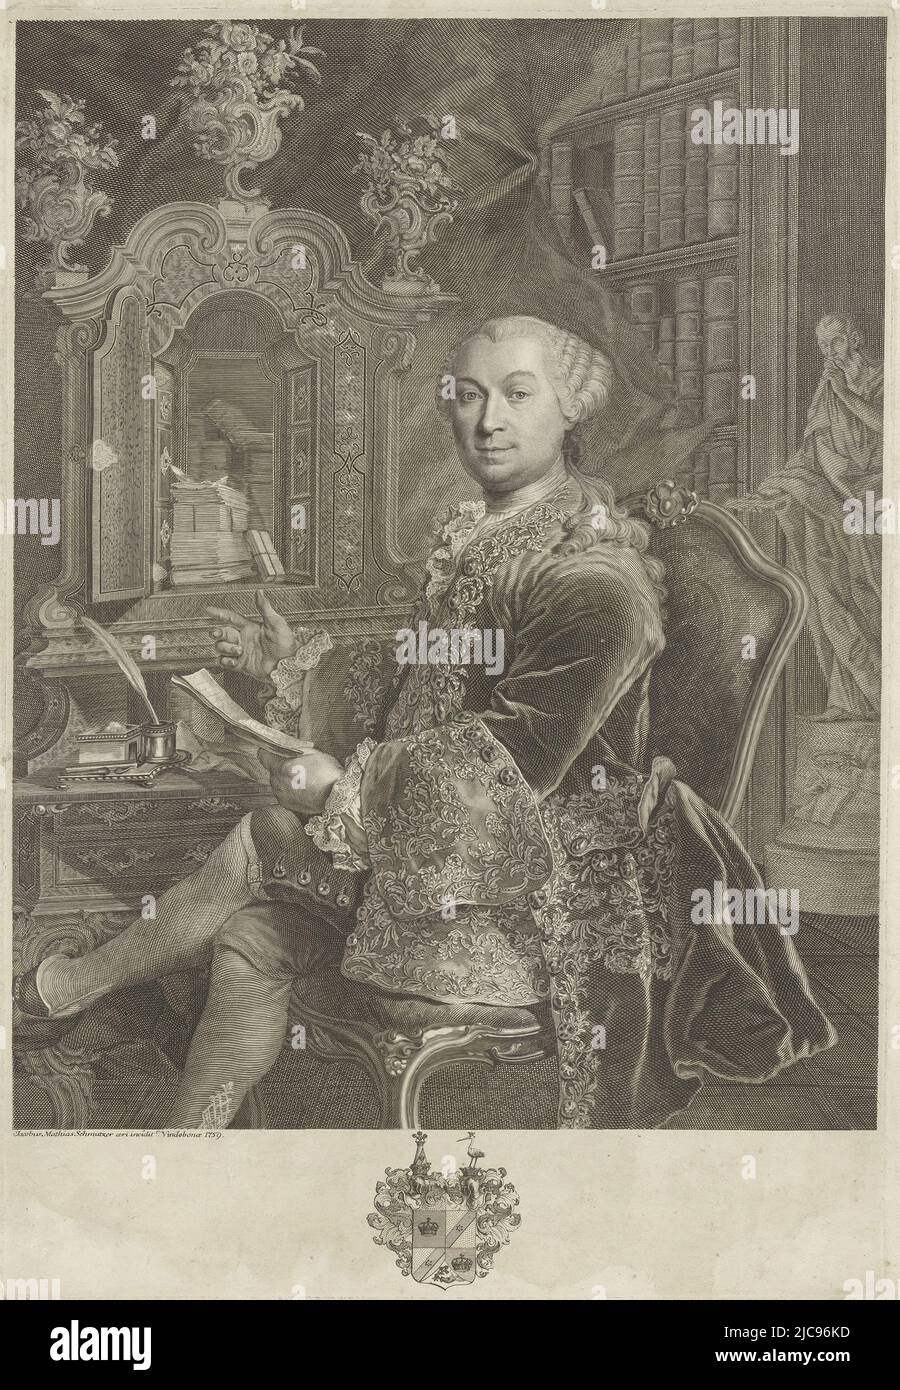 Portrait of Gustav Georg Knig von Knigsthal, print maker: Jakob Matthias Schmutzer, (mentioned on object), Vienna, 1759, paper, engraving, etching, h 478 mm - w 327 mm Stock Photo